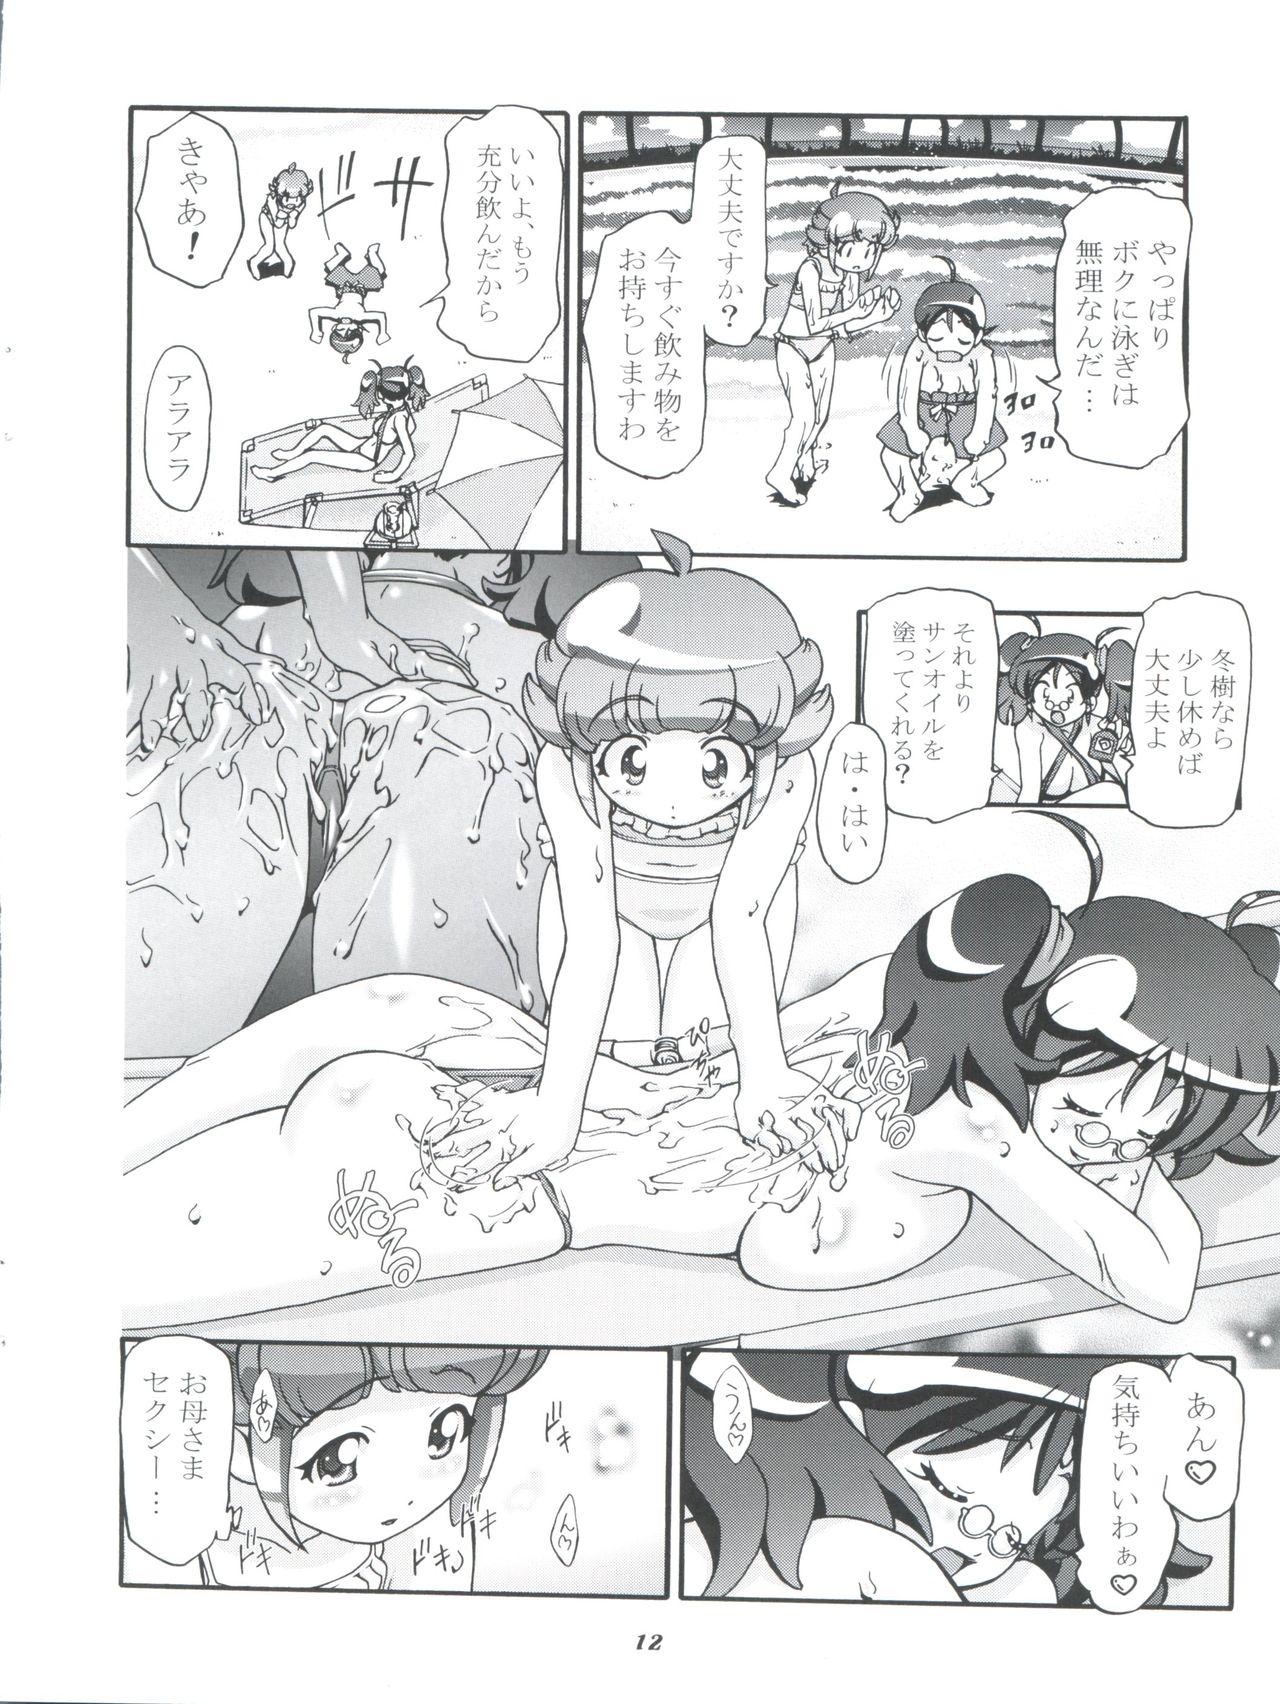 Amature Aki Momo - Autumn Peach - Keroro gunsou Tiny - Page 12